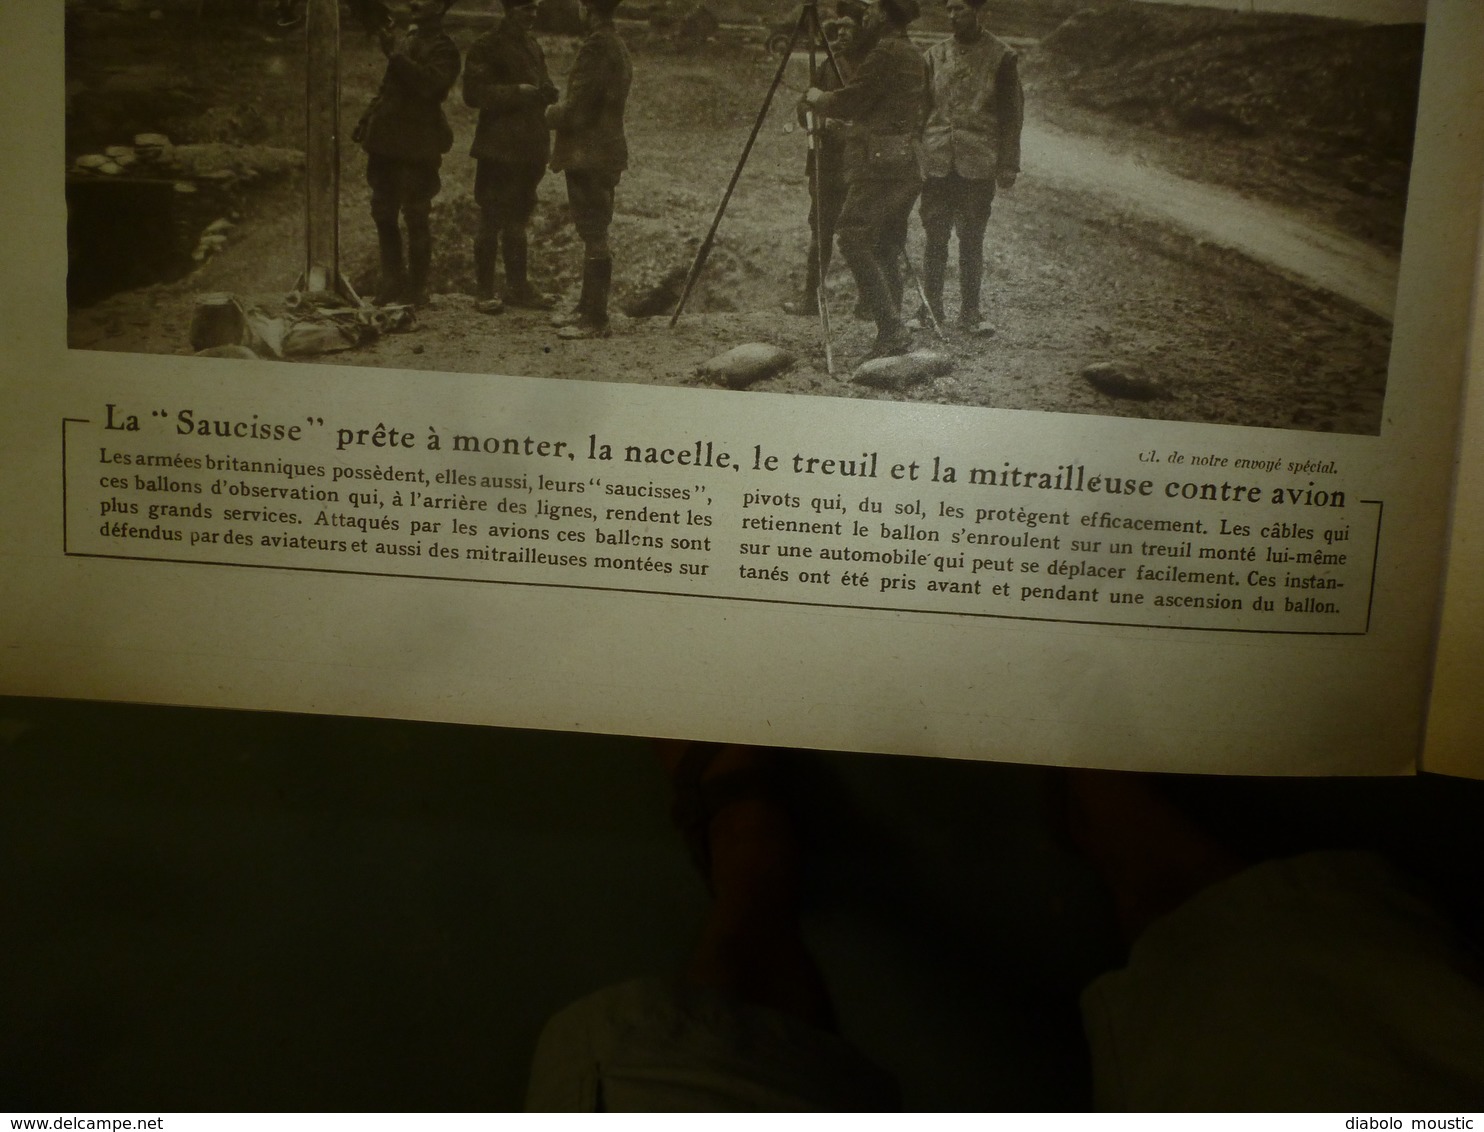 1917 LE MIROIR:Crimes à Crouchévatz (Serbie); Manequins explosifs;Chauny,Bapaume,Peronne;British-Army;Les portugais;etc